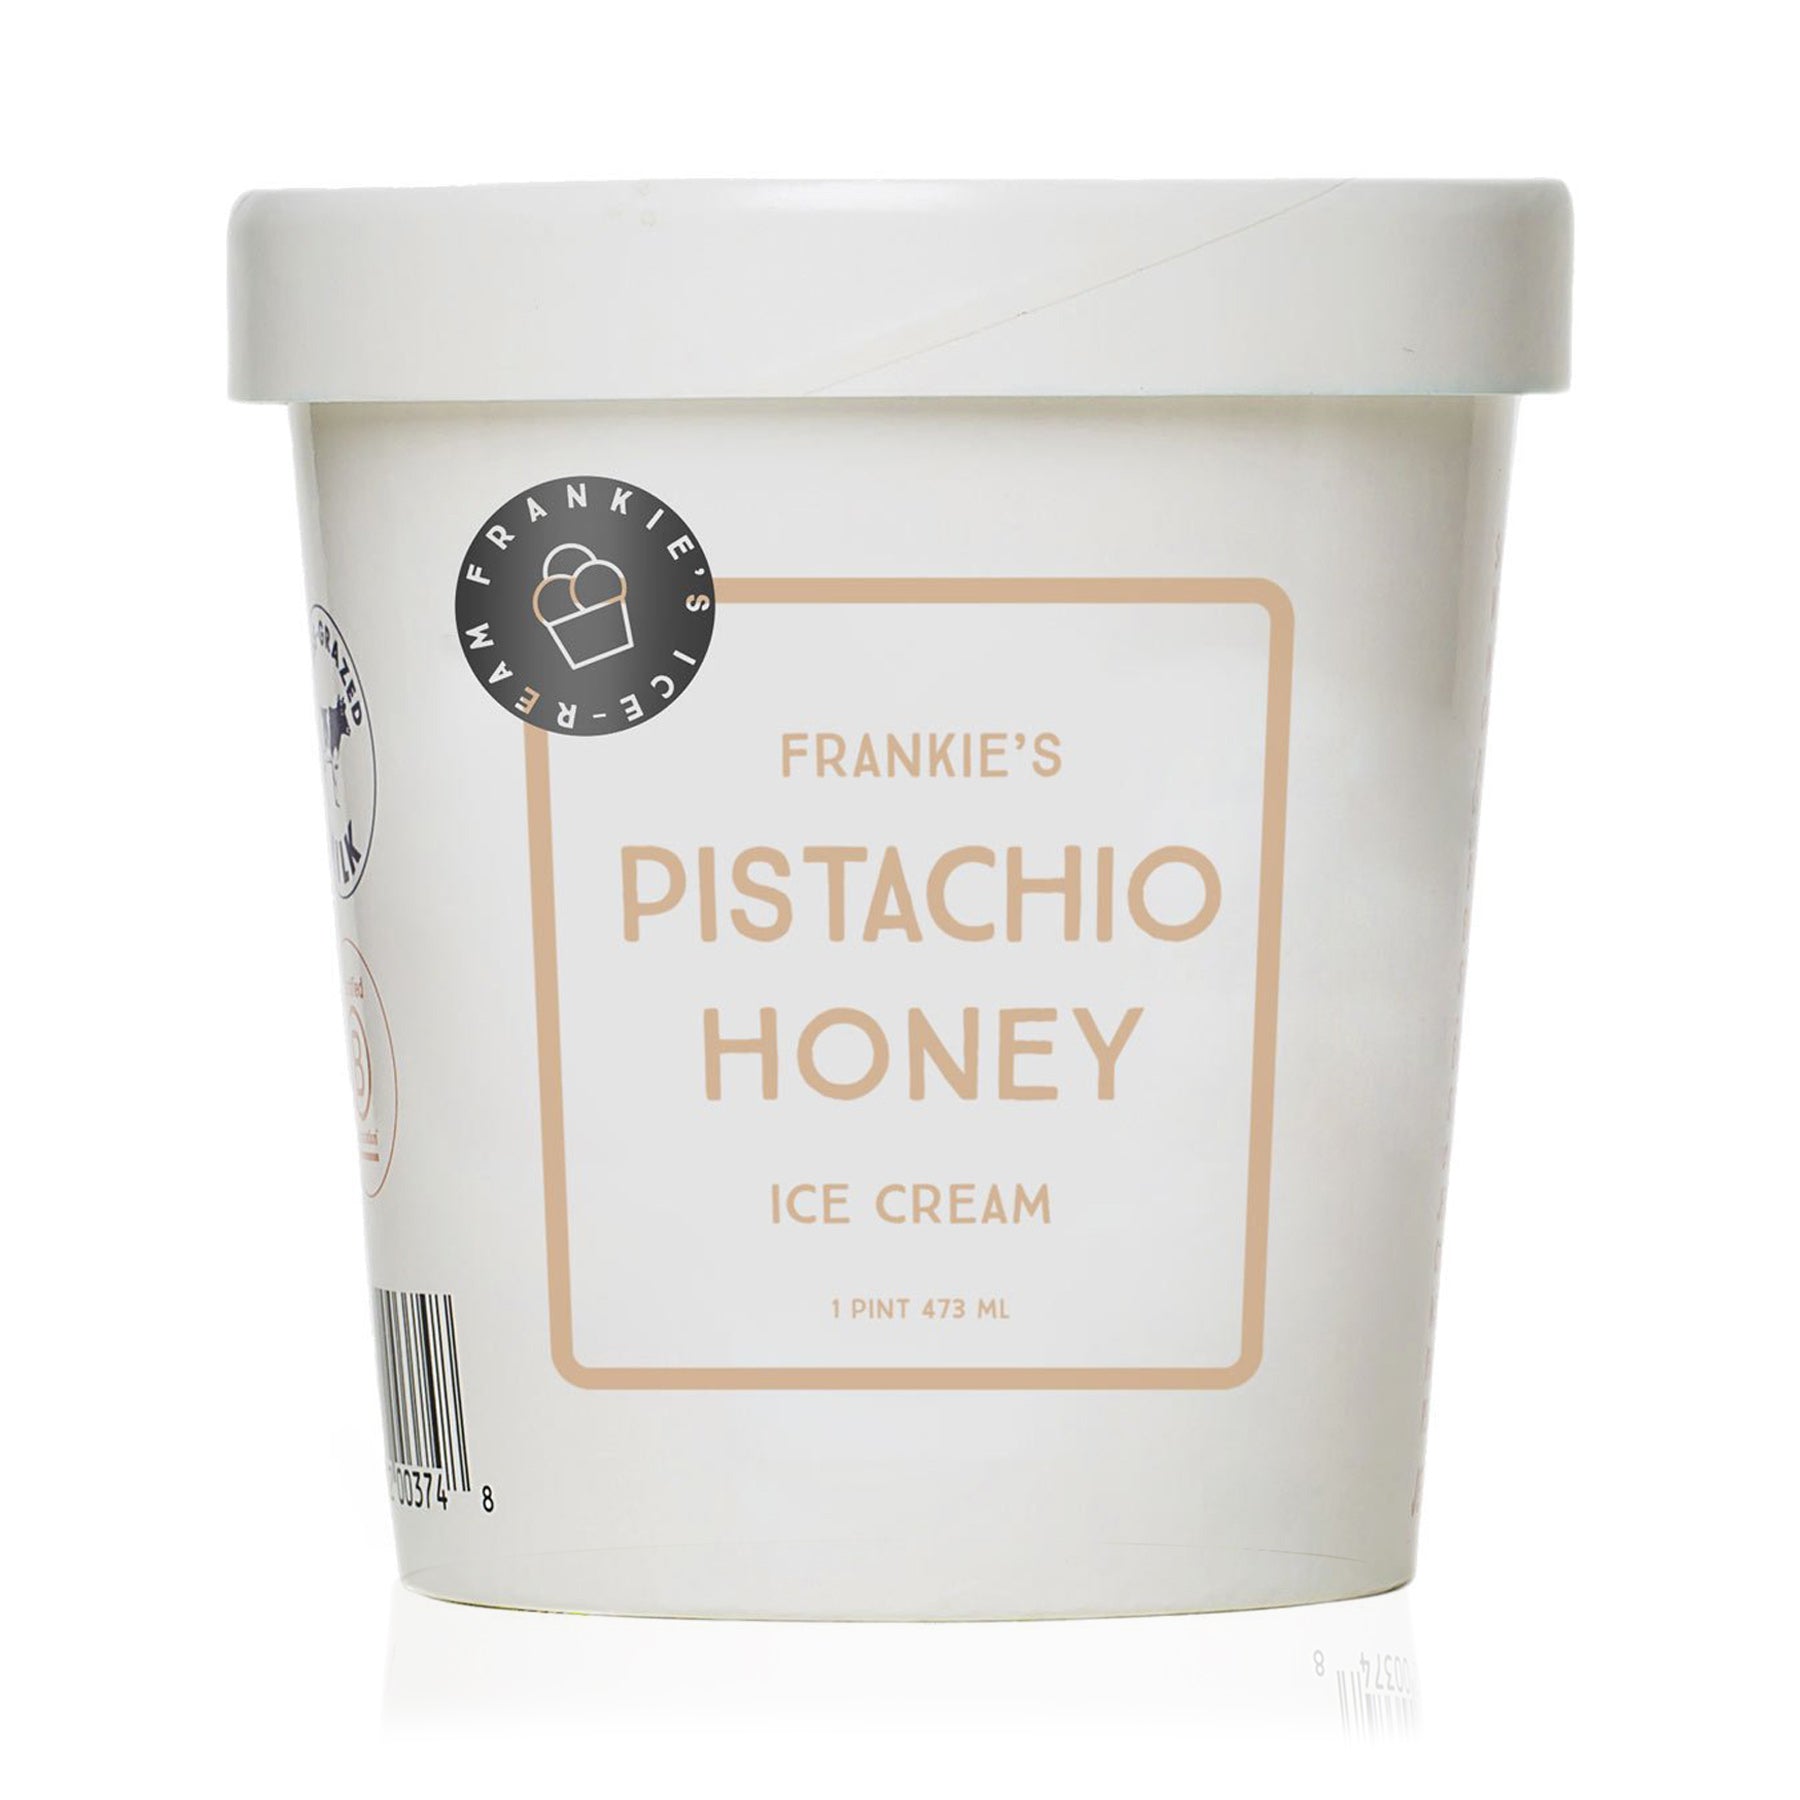 Frankie's Pistachio Honey